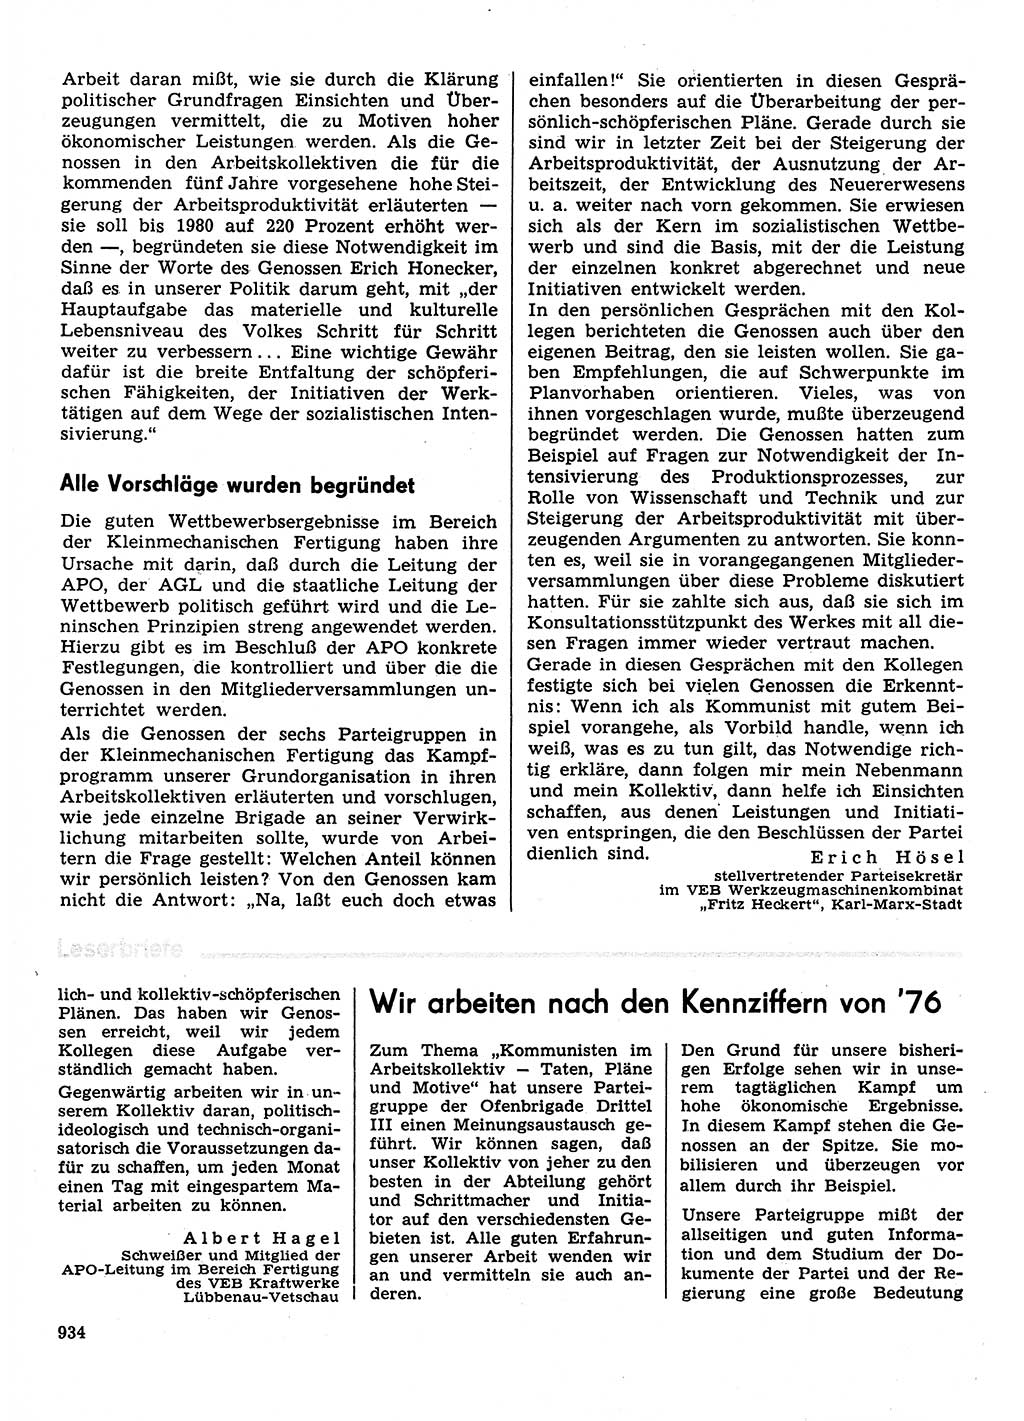 Neuer Weg (NW), Organ des Zentralkomitees (ZK) der SED (Sozialistische Einheitspartei Deutschlands) für Fragen des Parteilebens, 30. Jahrgang [Deutsche Demokratische Republik (DDR)] 1975, Seite 934 (NW ZK SED DDR 1975, S. 934)